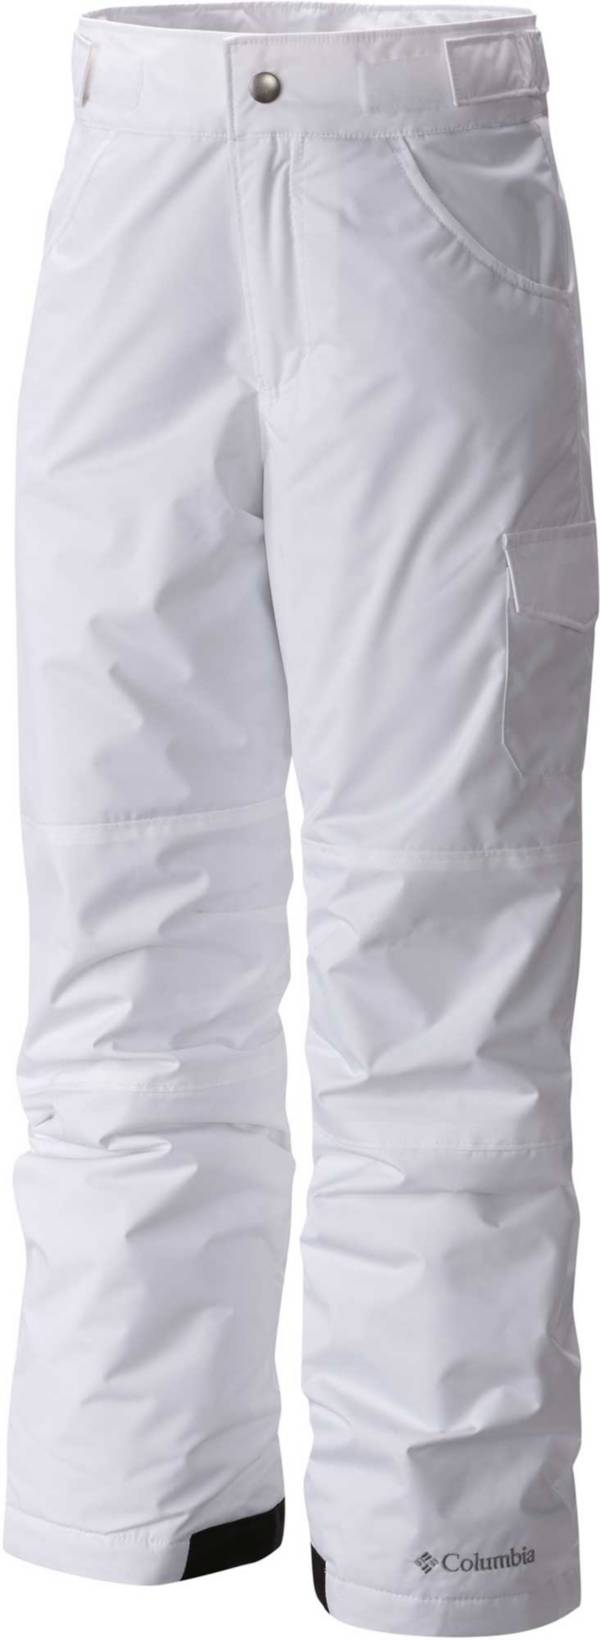 Macpac Women's Powder Bank Snow Pants